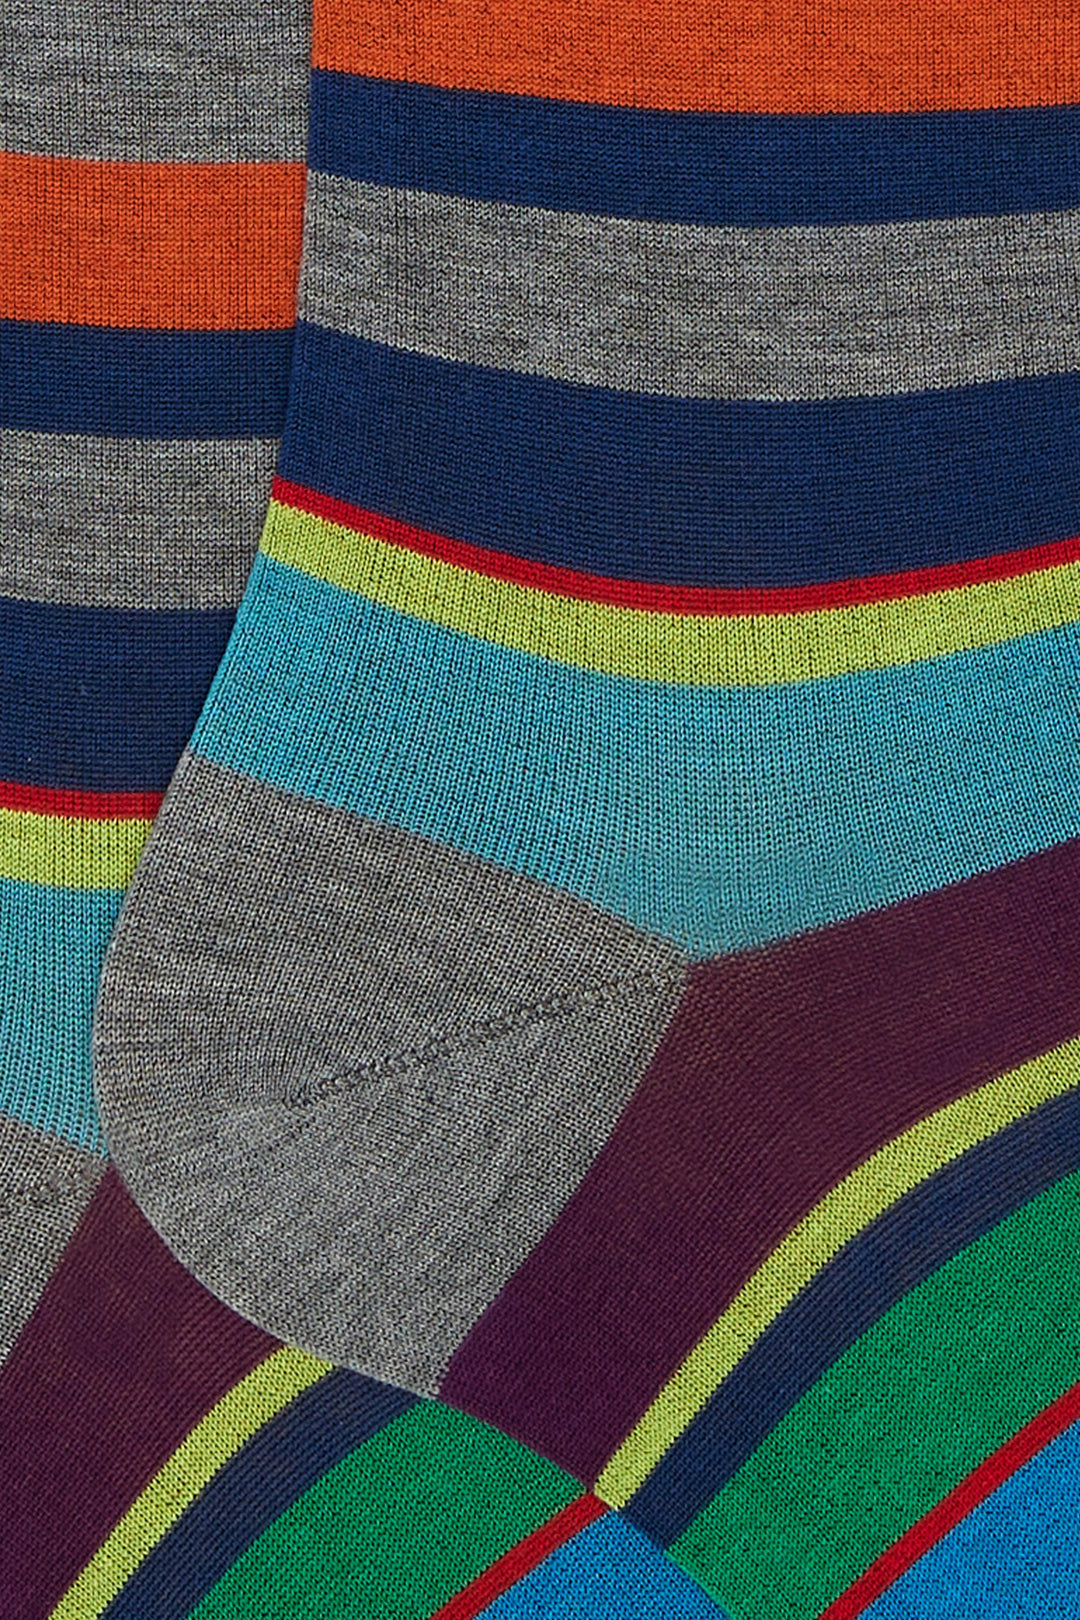 GALLO Calze lunghe cotone leggerissimo piombo righe multicolor - Mancinelli 1954